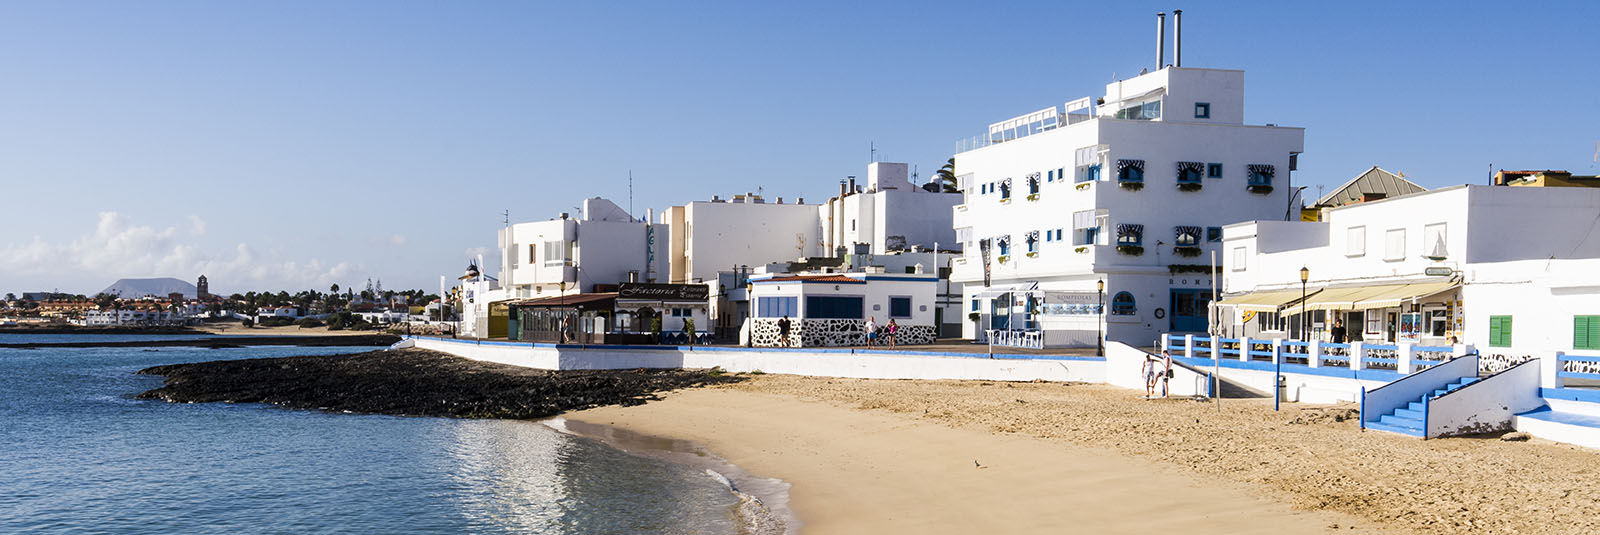 Der Ort Corralejo Fuerteventura: Der Playa de la Clavellina und das Avanti Boutique Hotel.